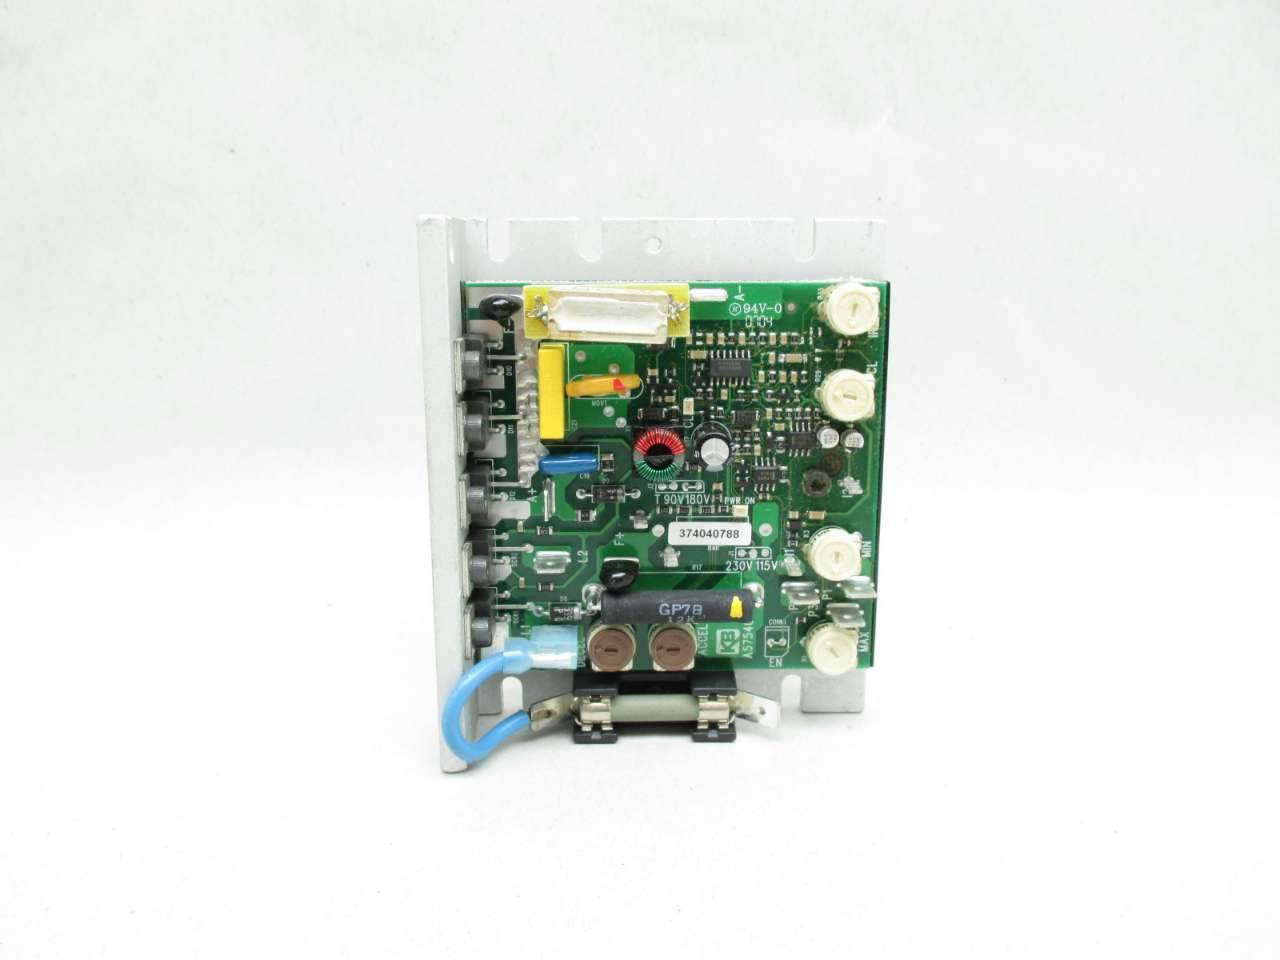 KB Electronics DC Motor Control Kbmm-225 3563b 30000115 for sale online